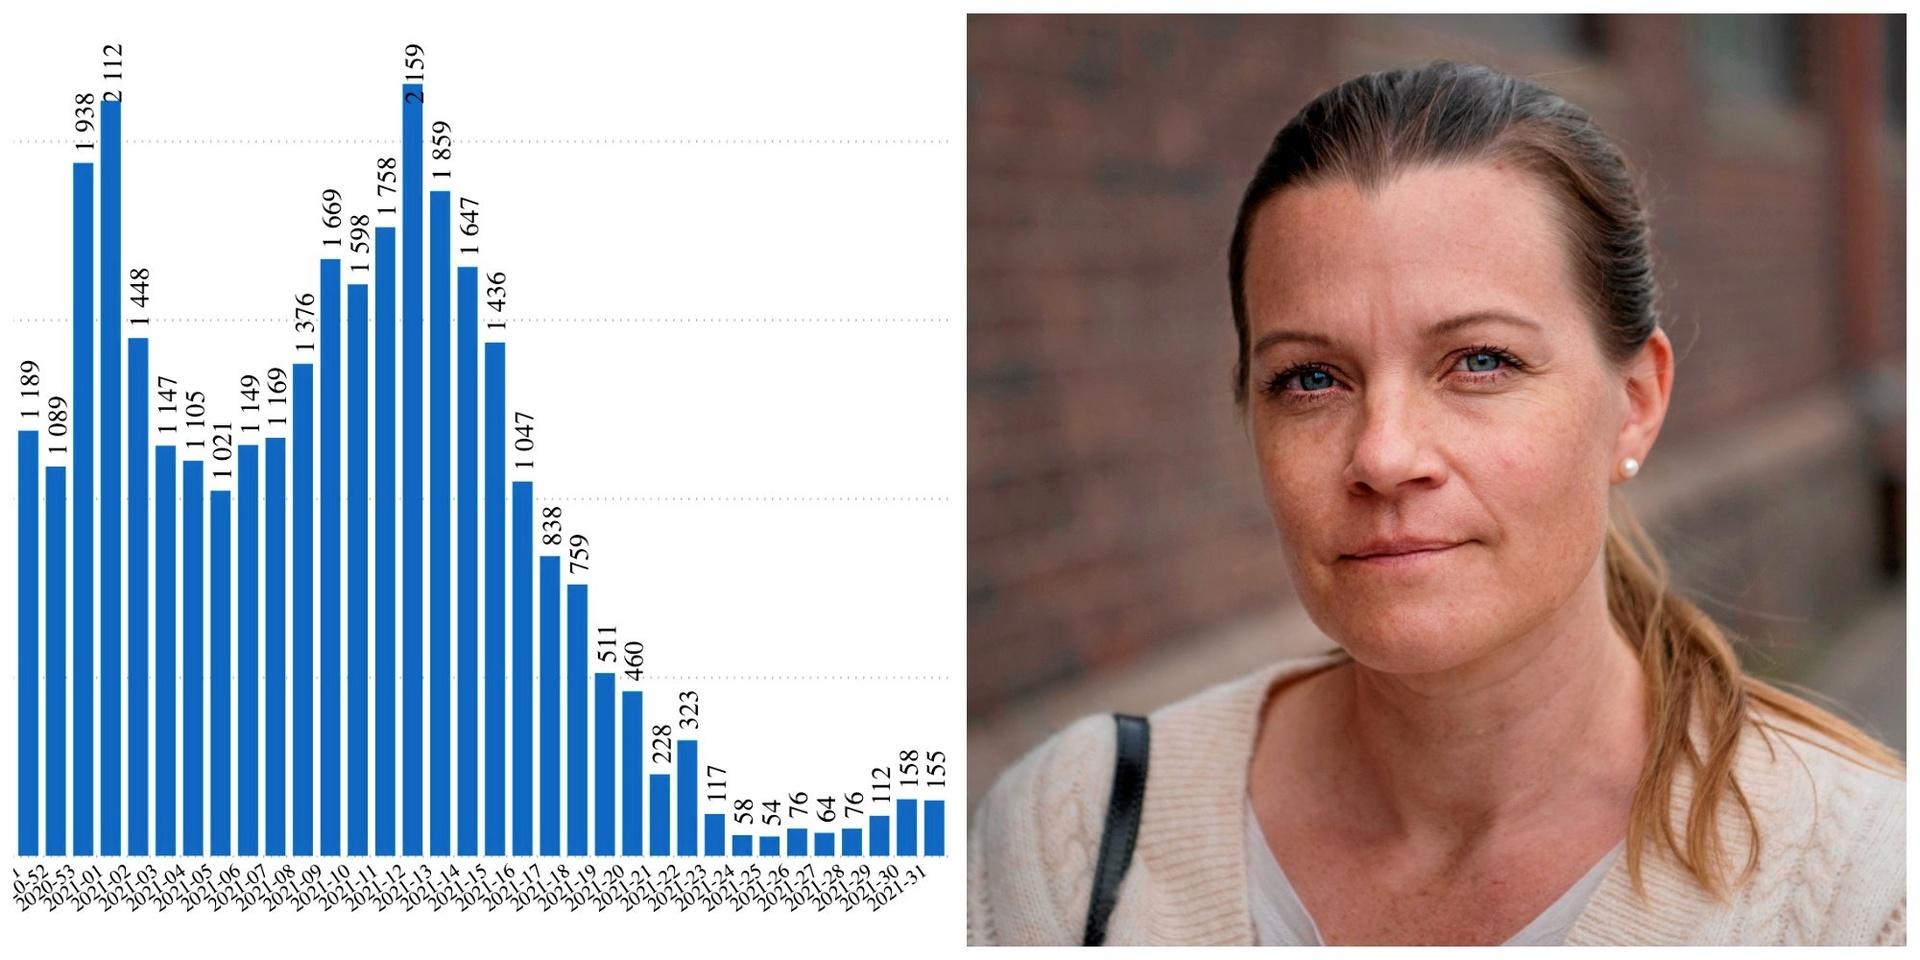 Ökningen av covidfall i Halland stannade upp förra veckan. ”Det är bra , men vi kan inte dra så stora växlar på siffrorna i dagsläget”, säger Johanna Wichel Steir, kommunikationsdirektör på Region Halland.